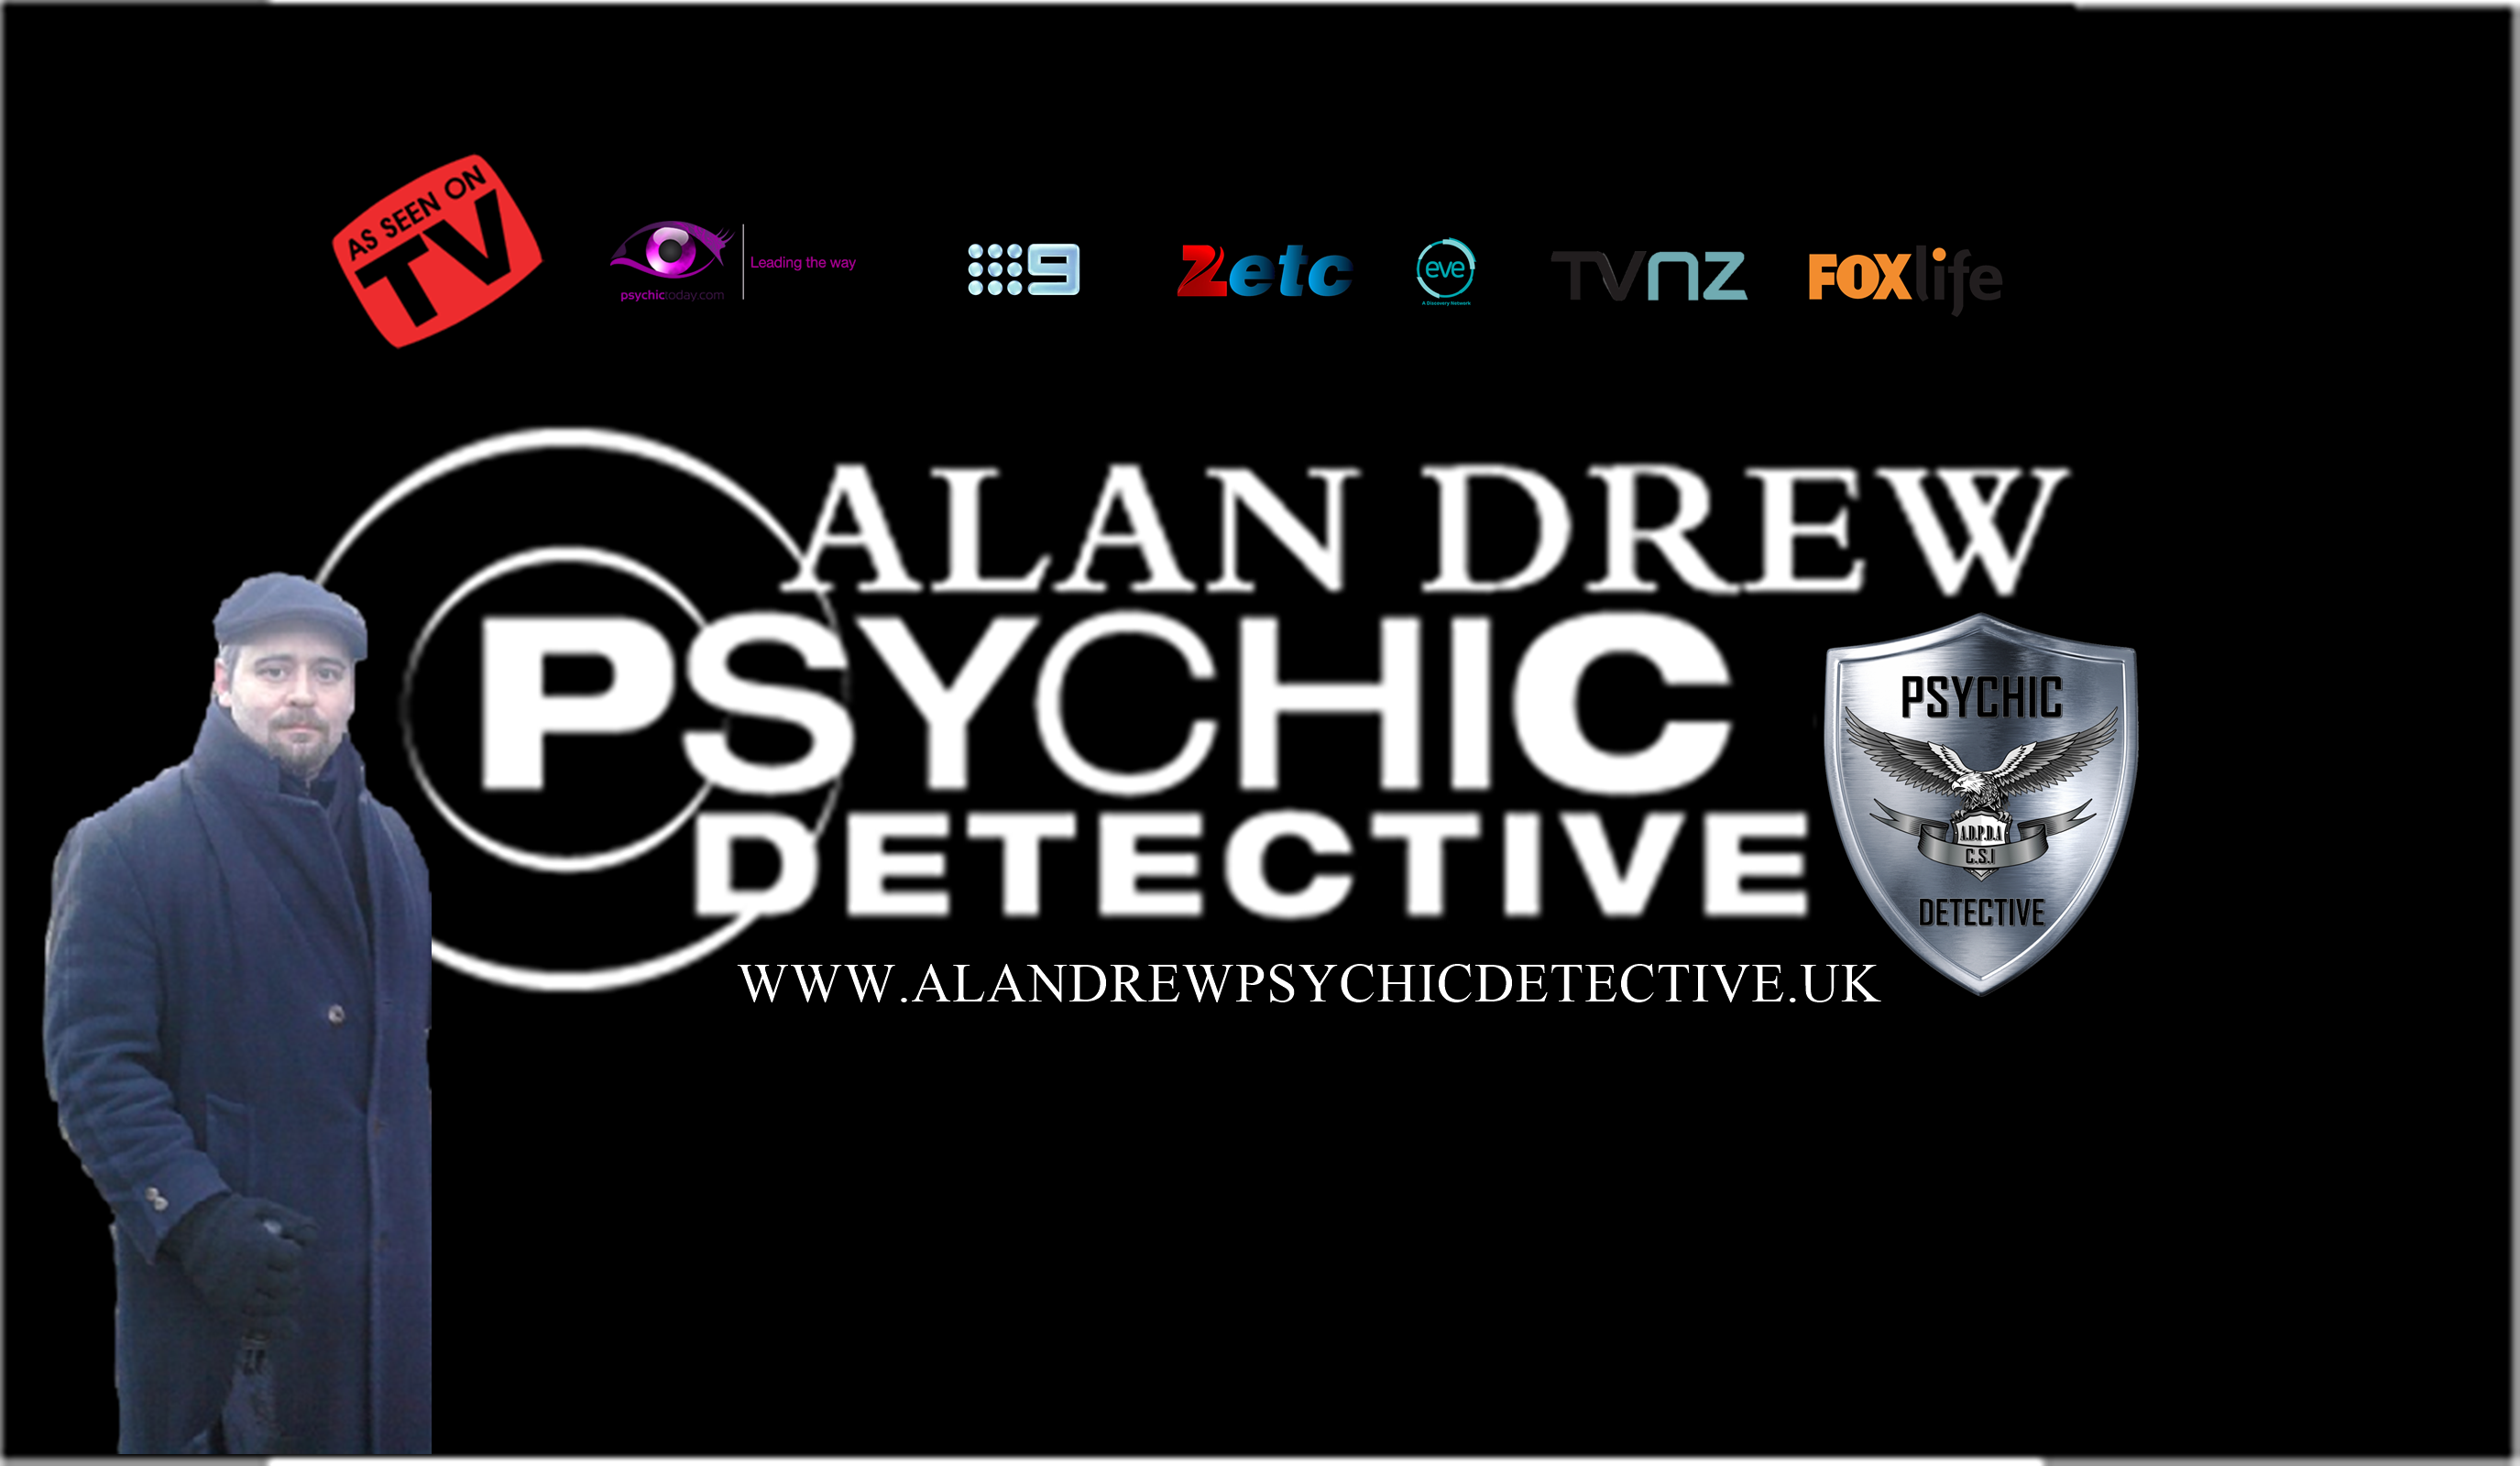 Psychic detective media